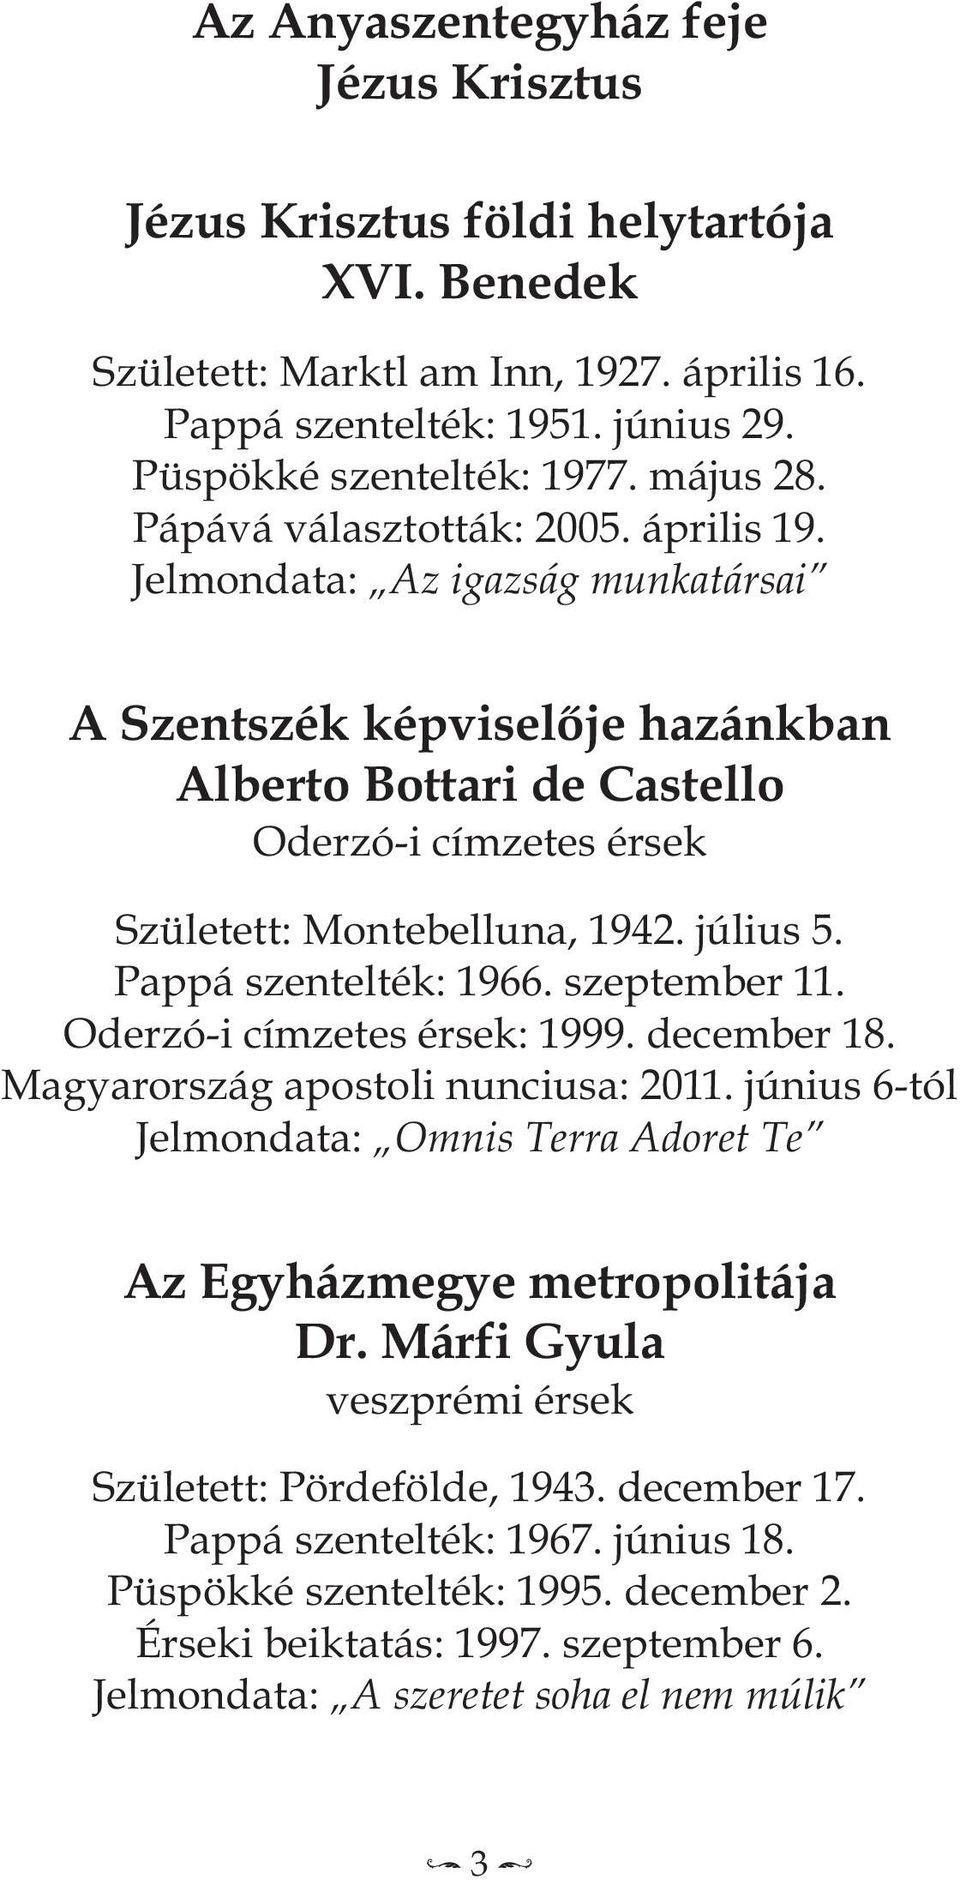 Pappá szentelték: 1966. szeptember 11. Oderzó-i címzetes érsek: 1999. december 18. Magyarország apostoli nunciusa: 2011. június 6-tól Jelmondata: Omnis Terra Adoret Te Az egyházmegye metropolitája Dr.